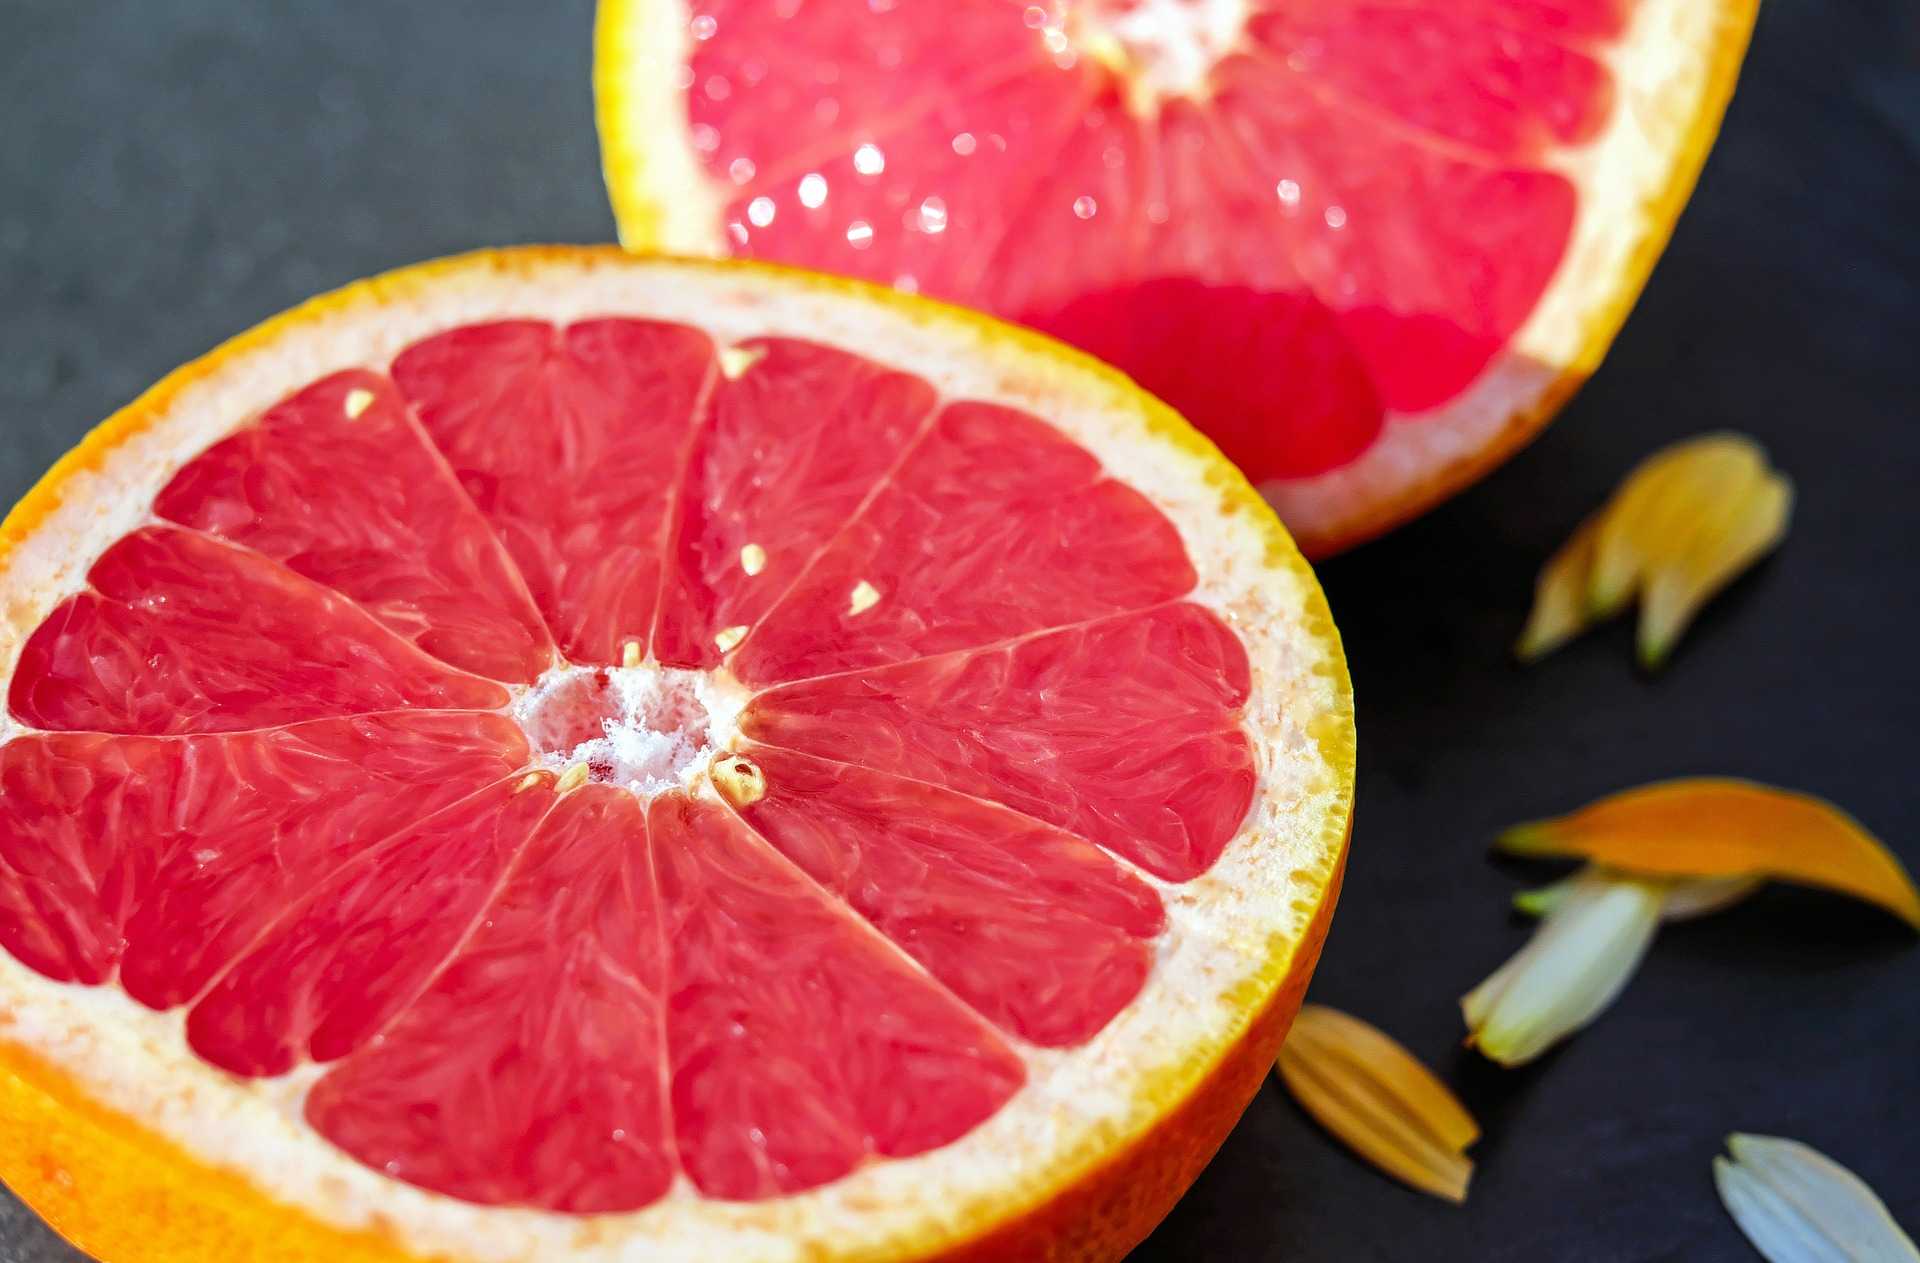 Грейпфрут – калорийность, польза и вред при похудении